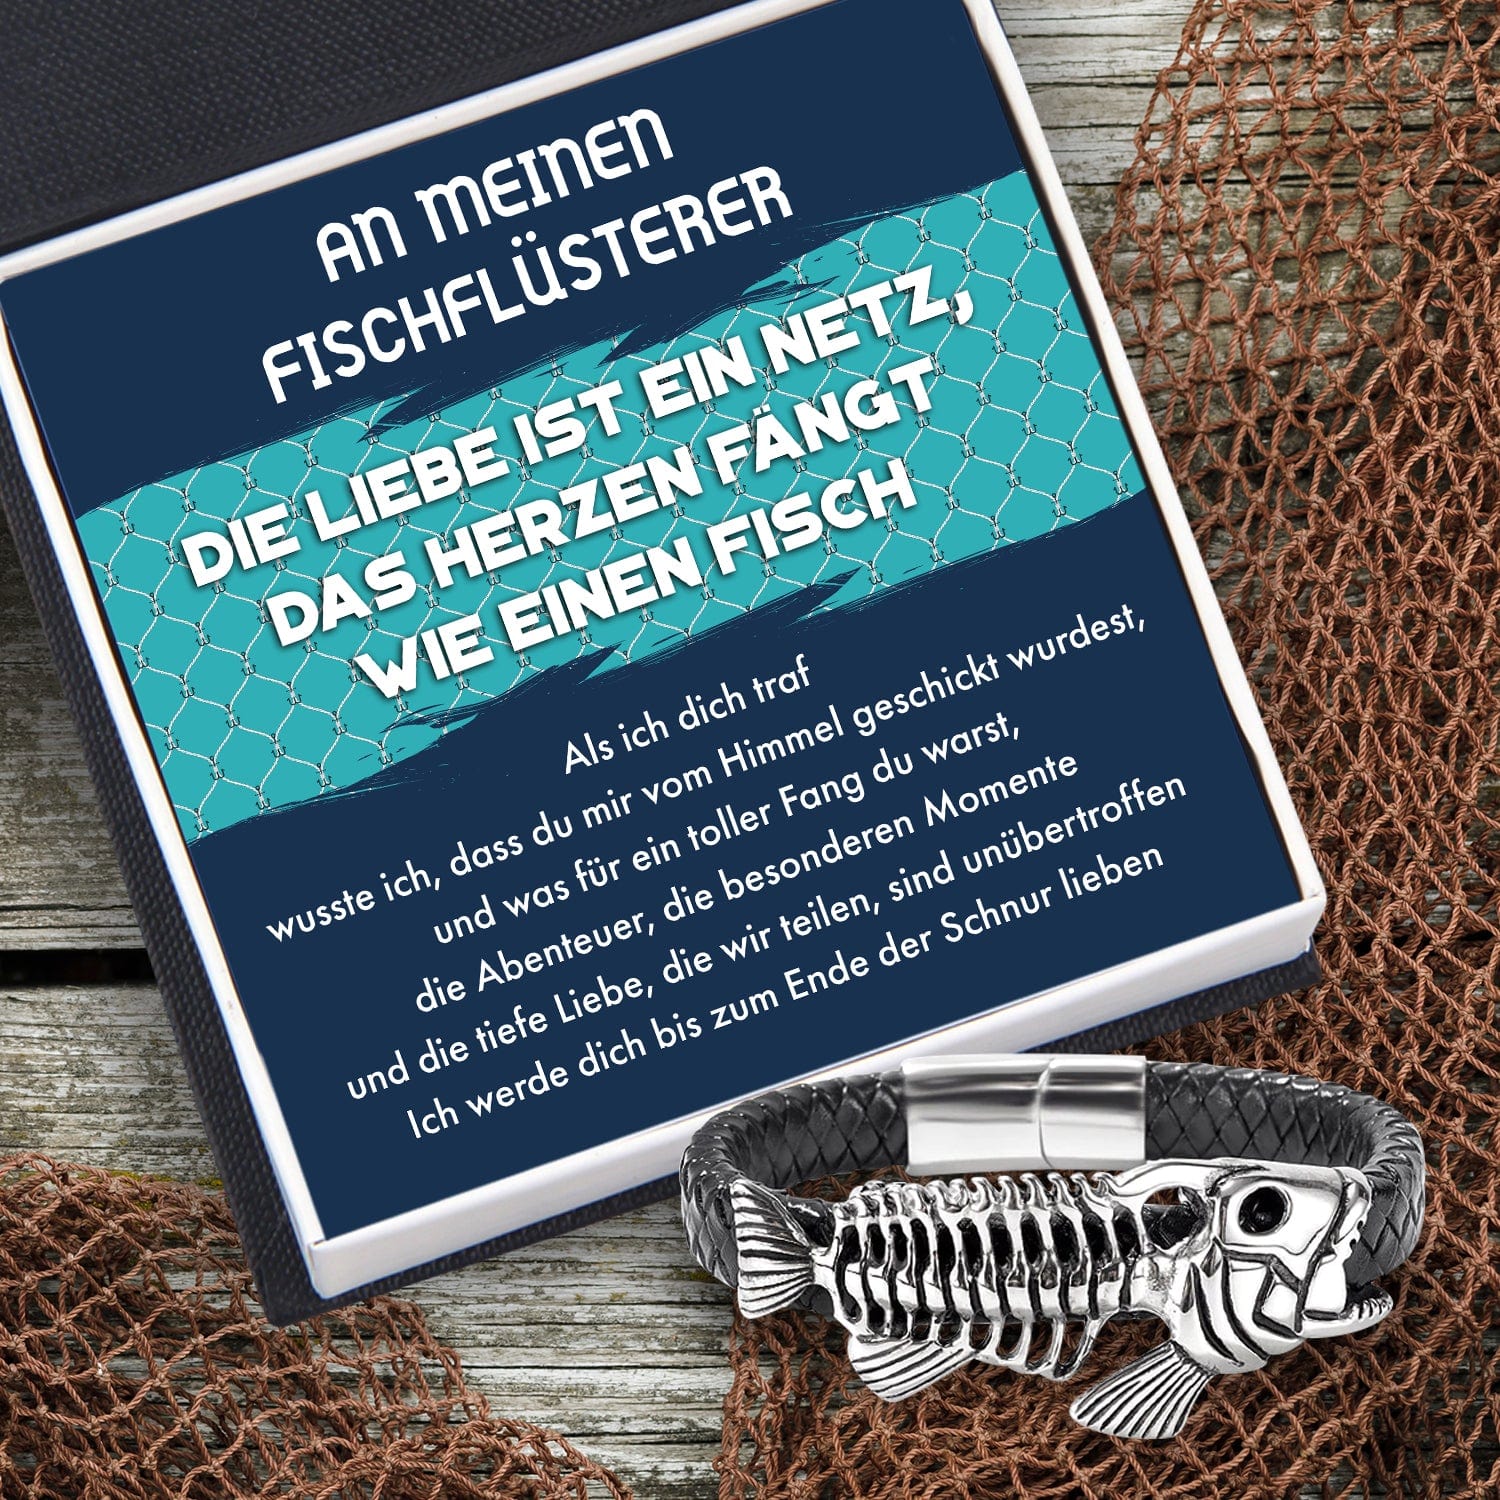 Schwarzes Fischgräte Lederarmband - Angeln - An Meinen Mann - Ich Werde Dich Bis Zum Ende Der Schnur Lieben - Degbzr26002